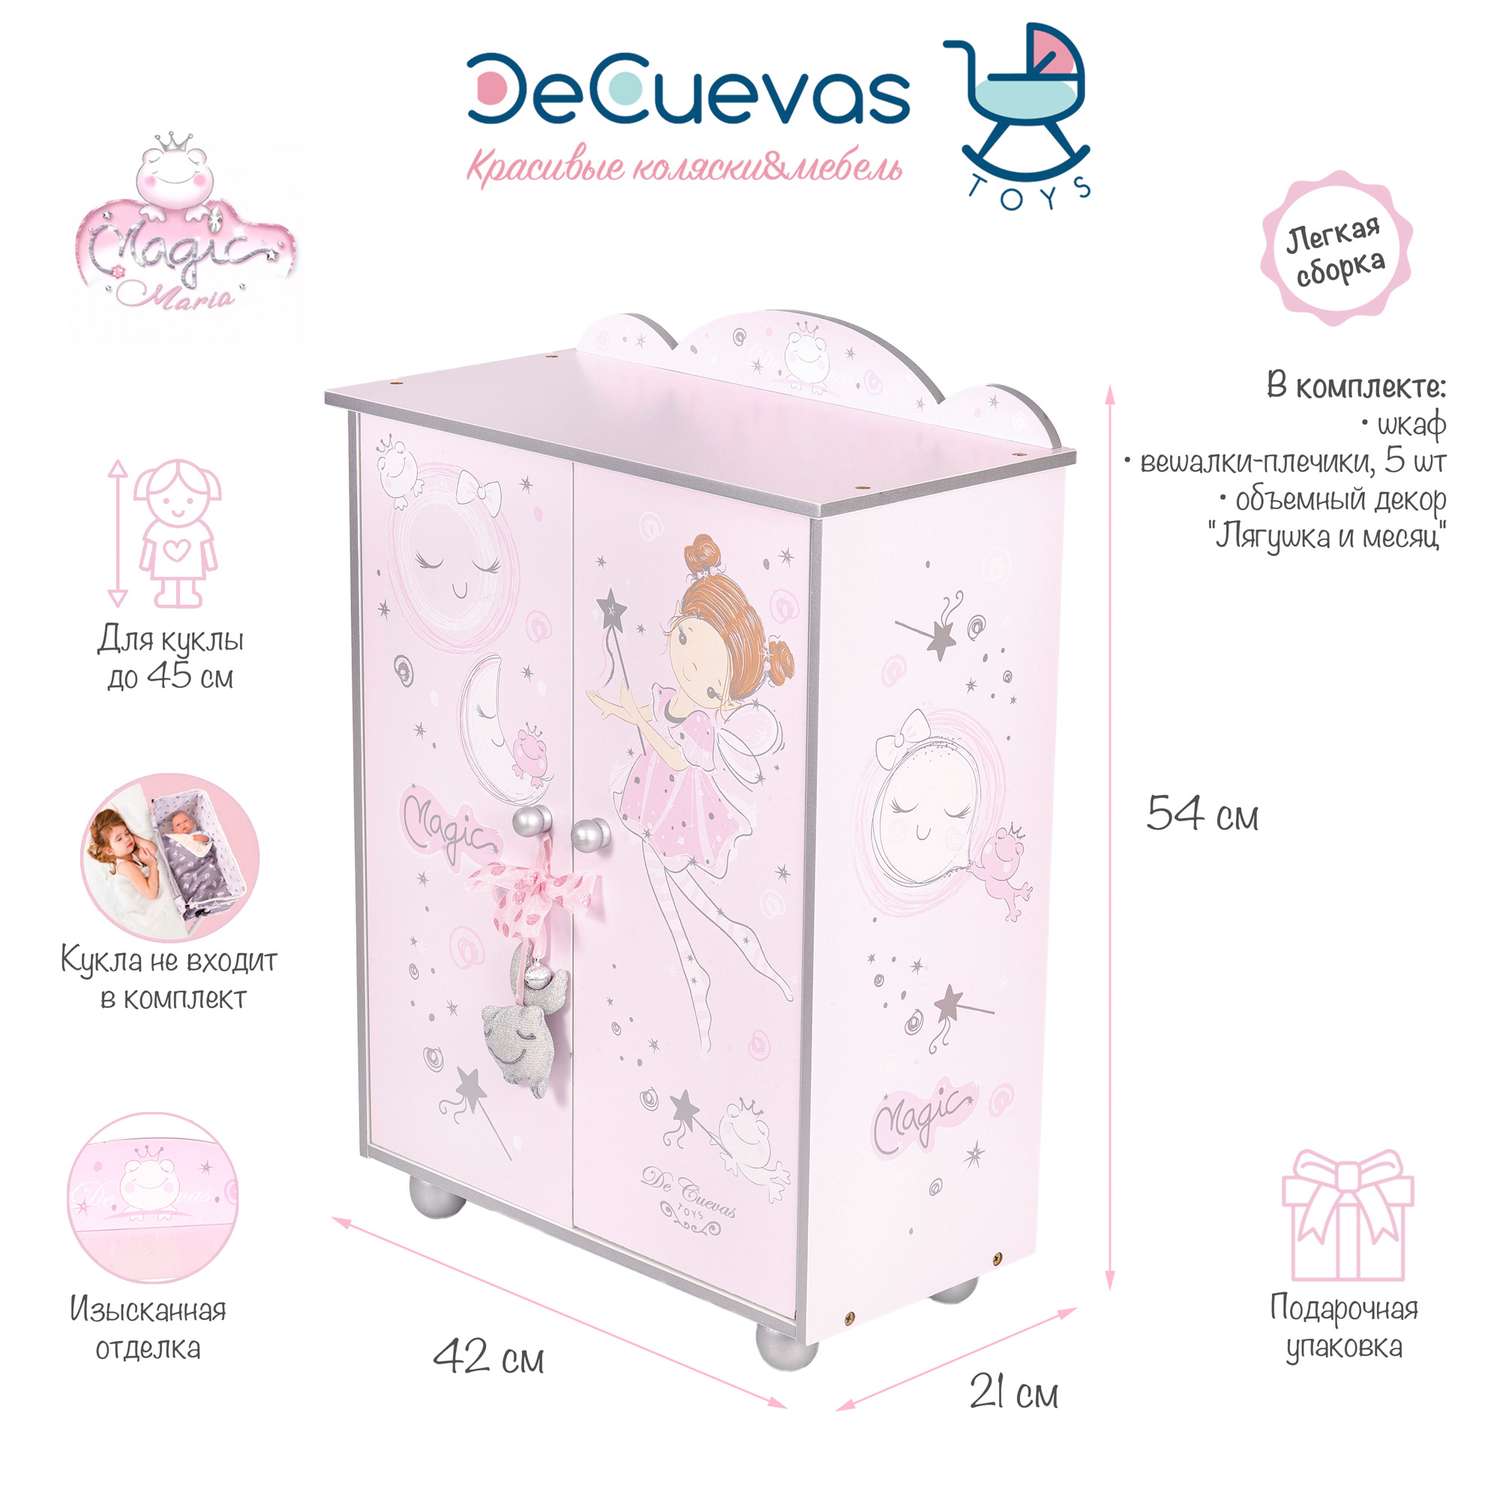 Гардеробный шкаф DeCuevas Toys для куклы серии Мария 54 см 55234 - фото 2